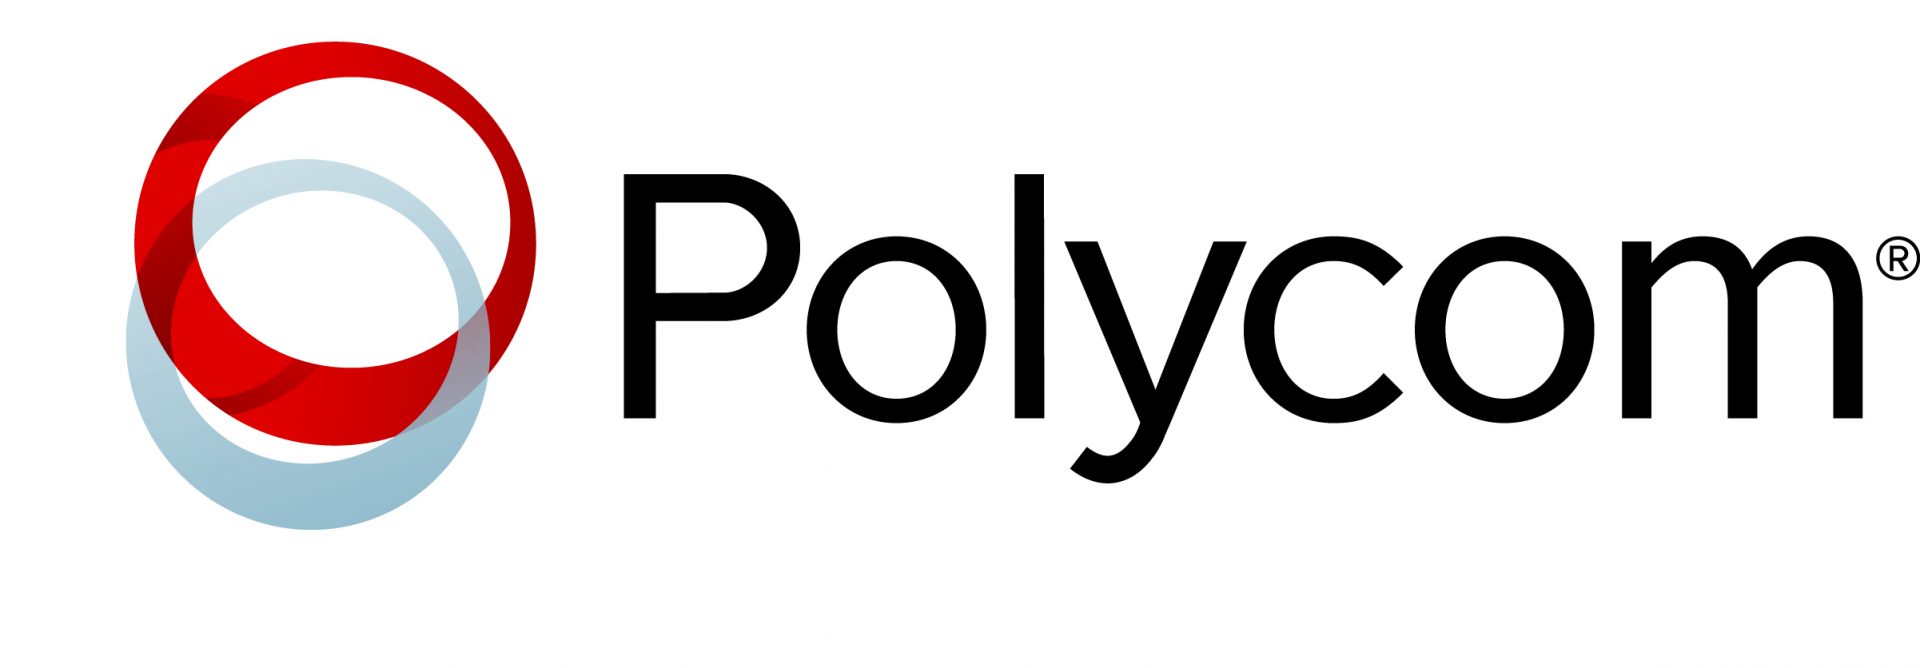 Polycom - Venezuela